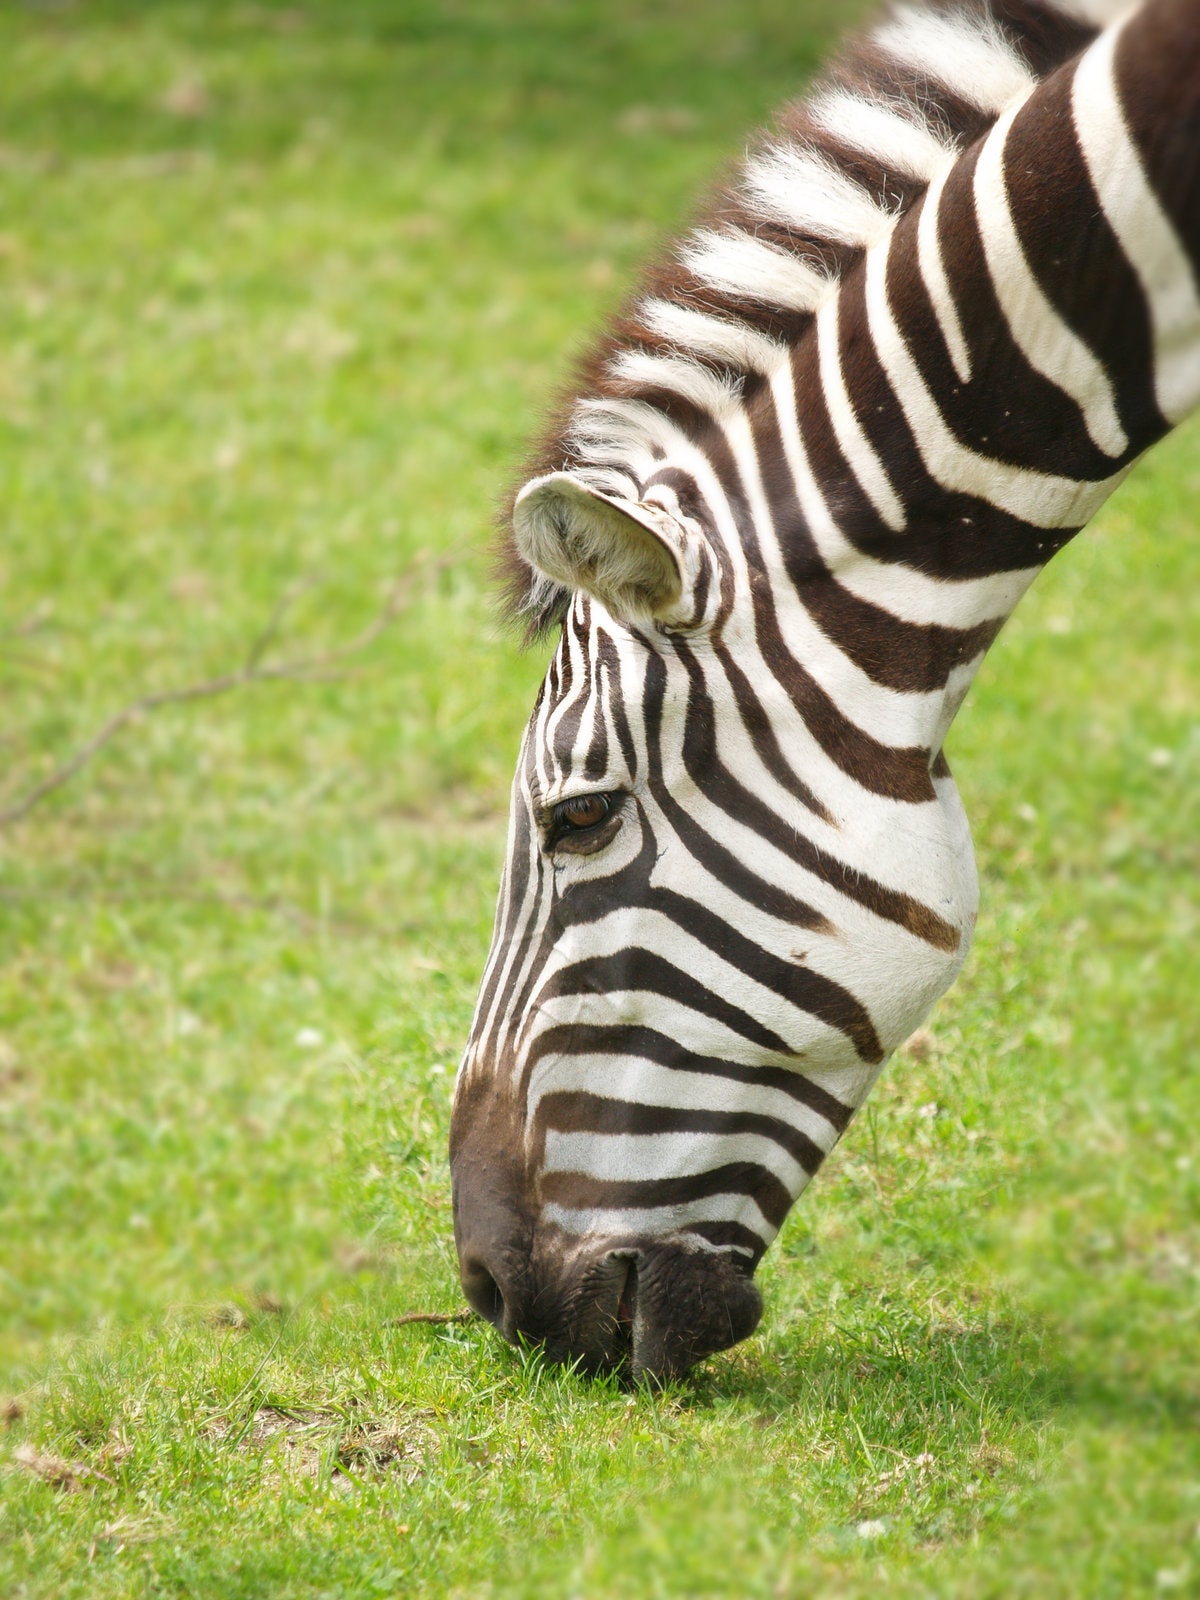 Interesting Zebra Facts for Kids